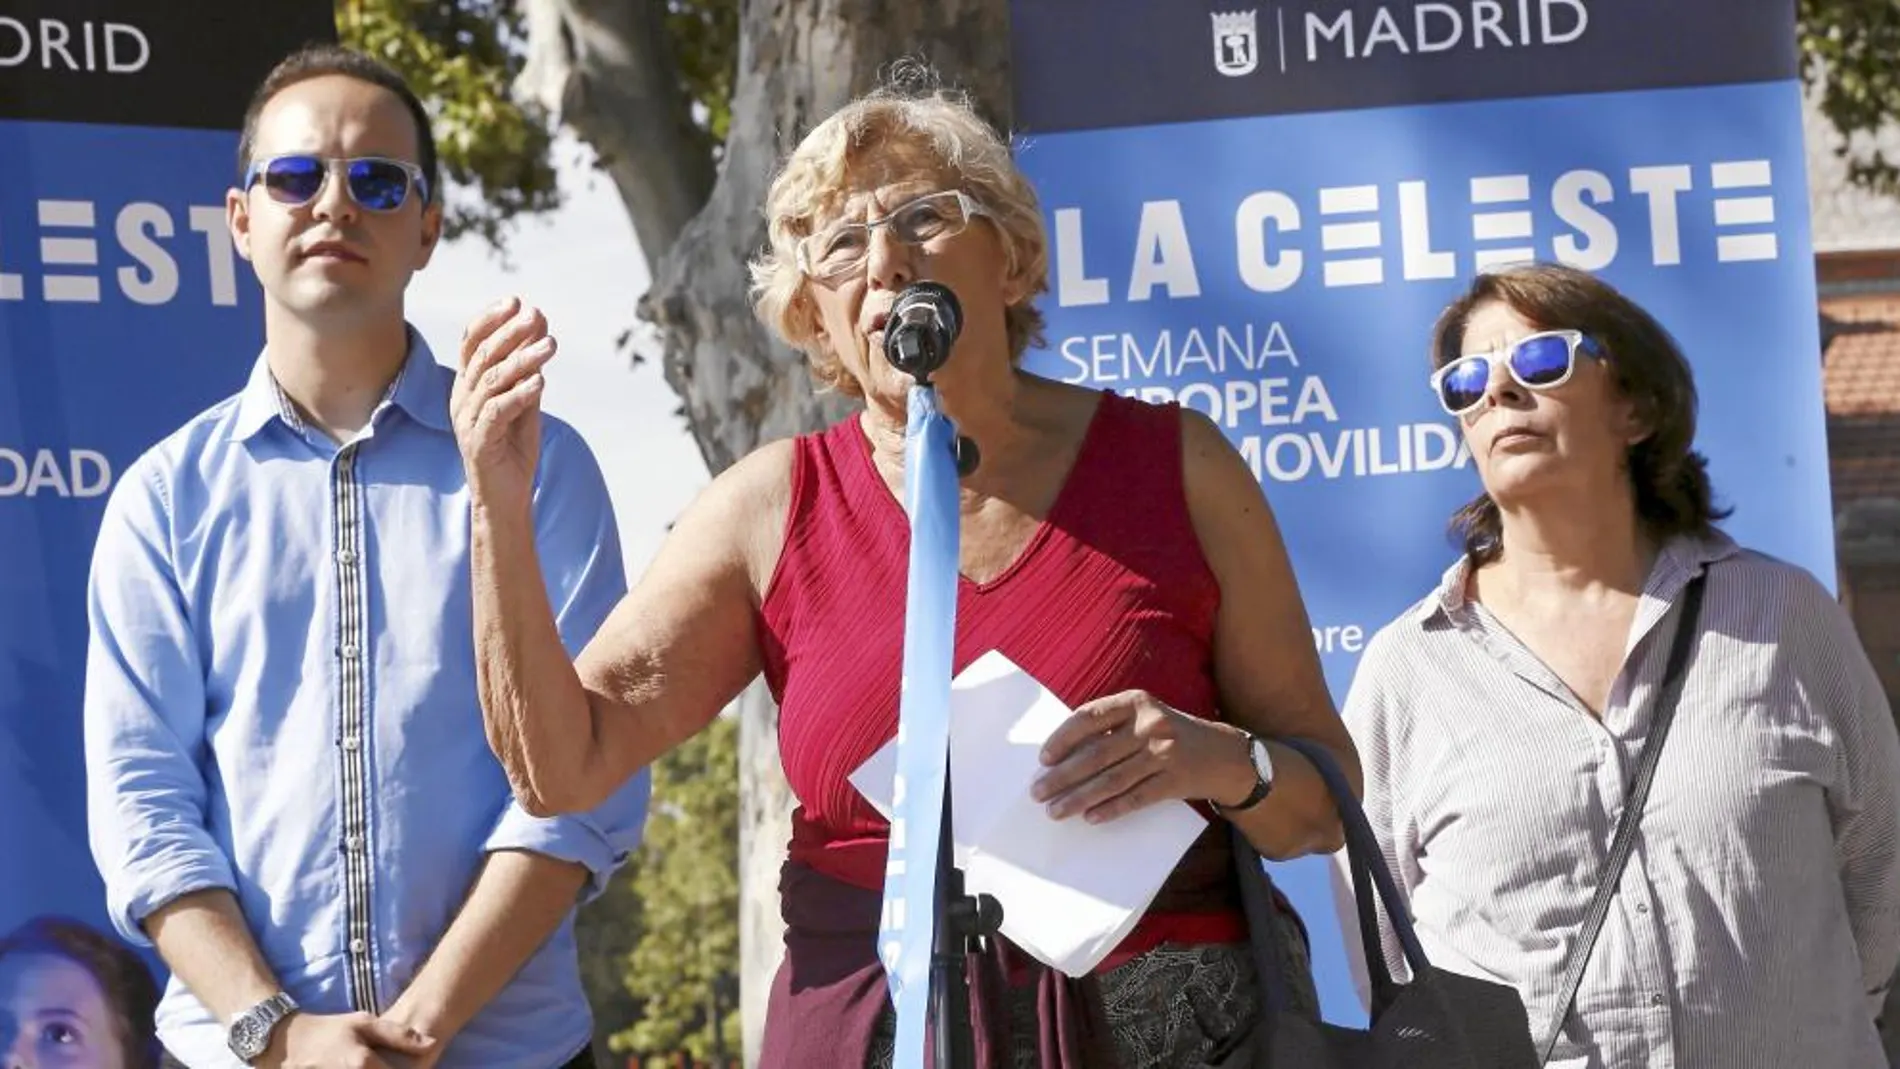 La primera edil de la capital, Manuela Carmena, ayer durante el acto de presentación de la fiesta de movilidad sostenible «La Celeste», en Matadero Madrid